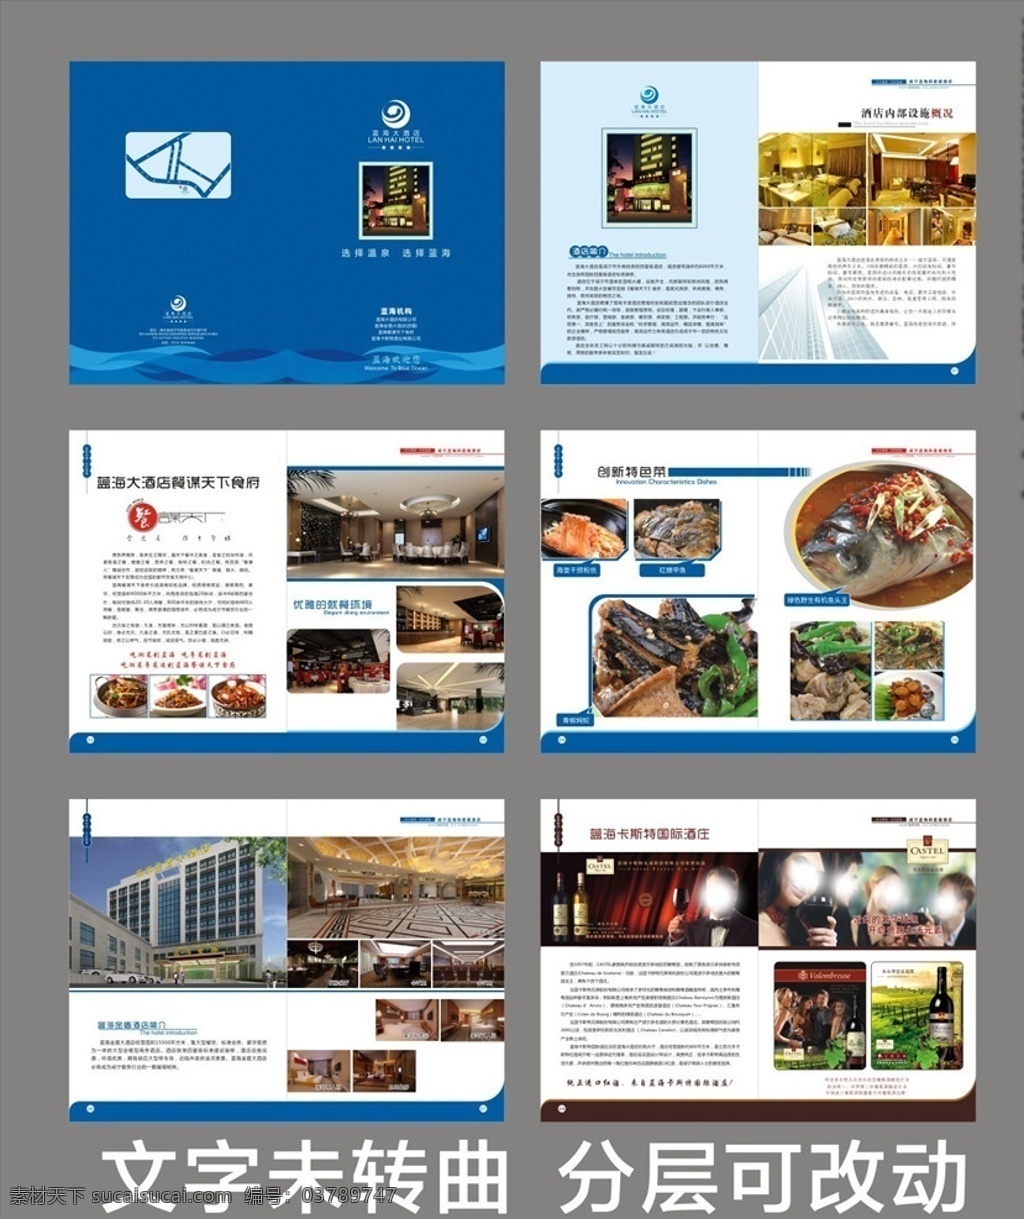 酒店画册 画册 蓝色画册 餐饮 酒店 酒店宣传 招牌菜 红酒 画册设计